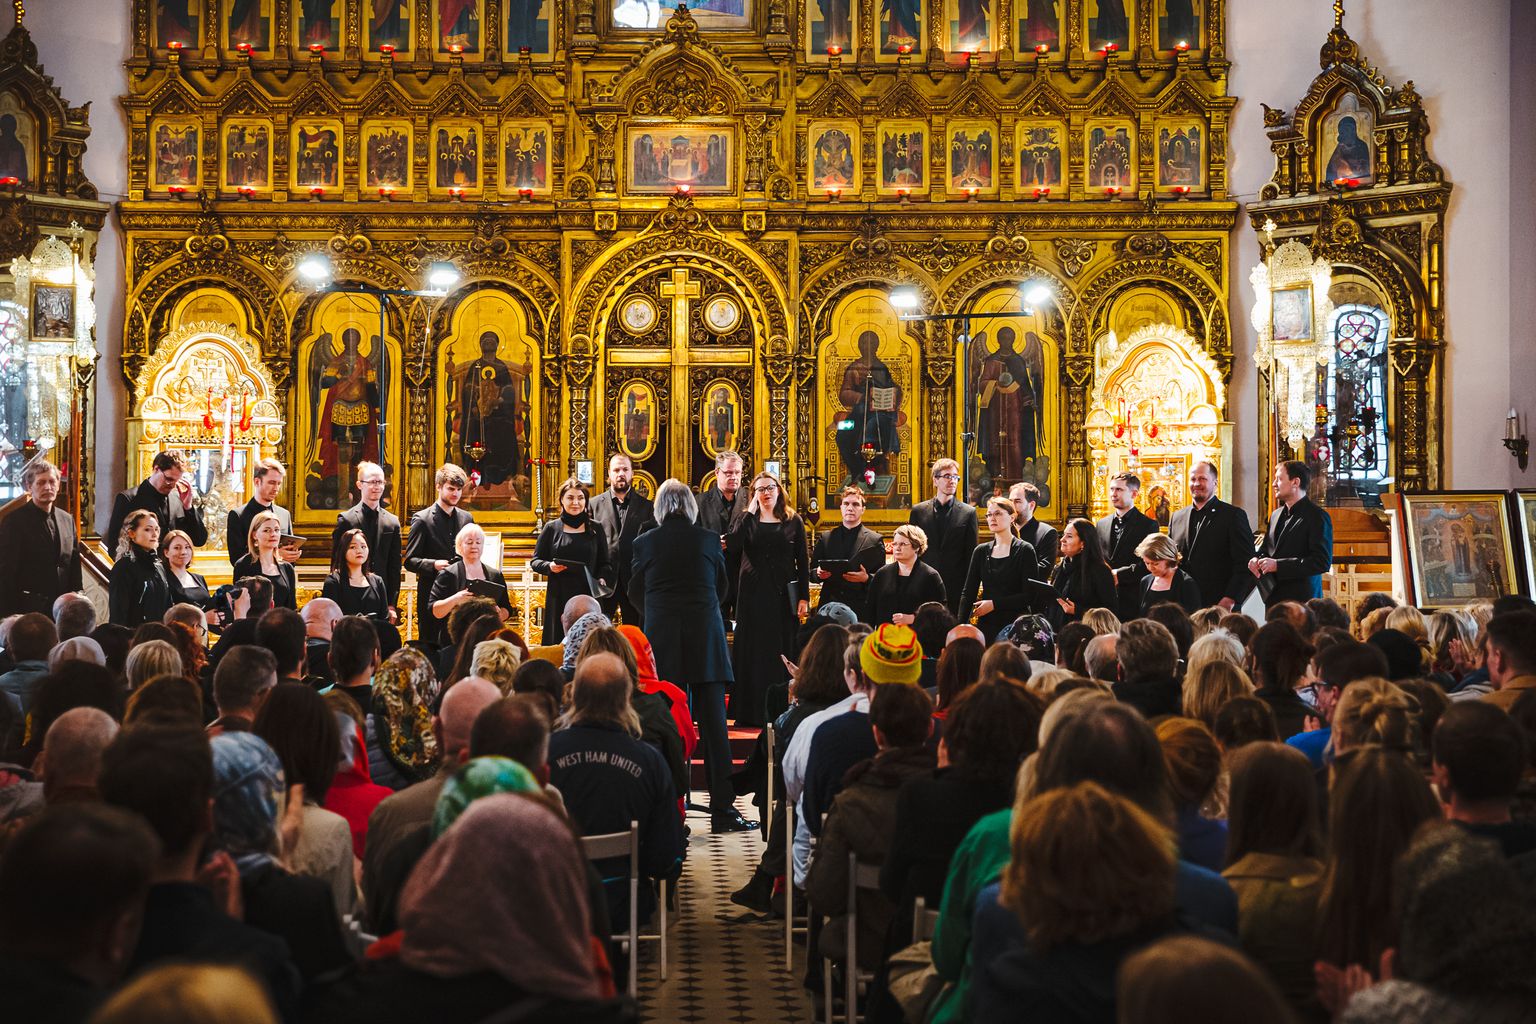 Festivali "Tallinn-Narva Music Week" üks kõrghetki oli Eesti filharmoonia kammerkoori kontsert Tõnu Kaljuste juhatusel Narva Issanda Ülestõusmise kirikus, kus kanti ette Arvo Pärdi teoseid.